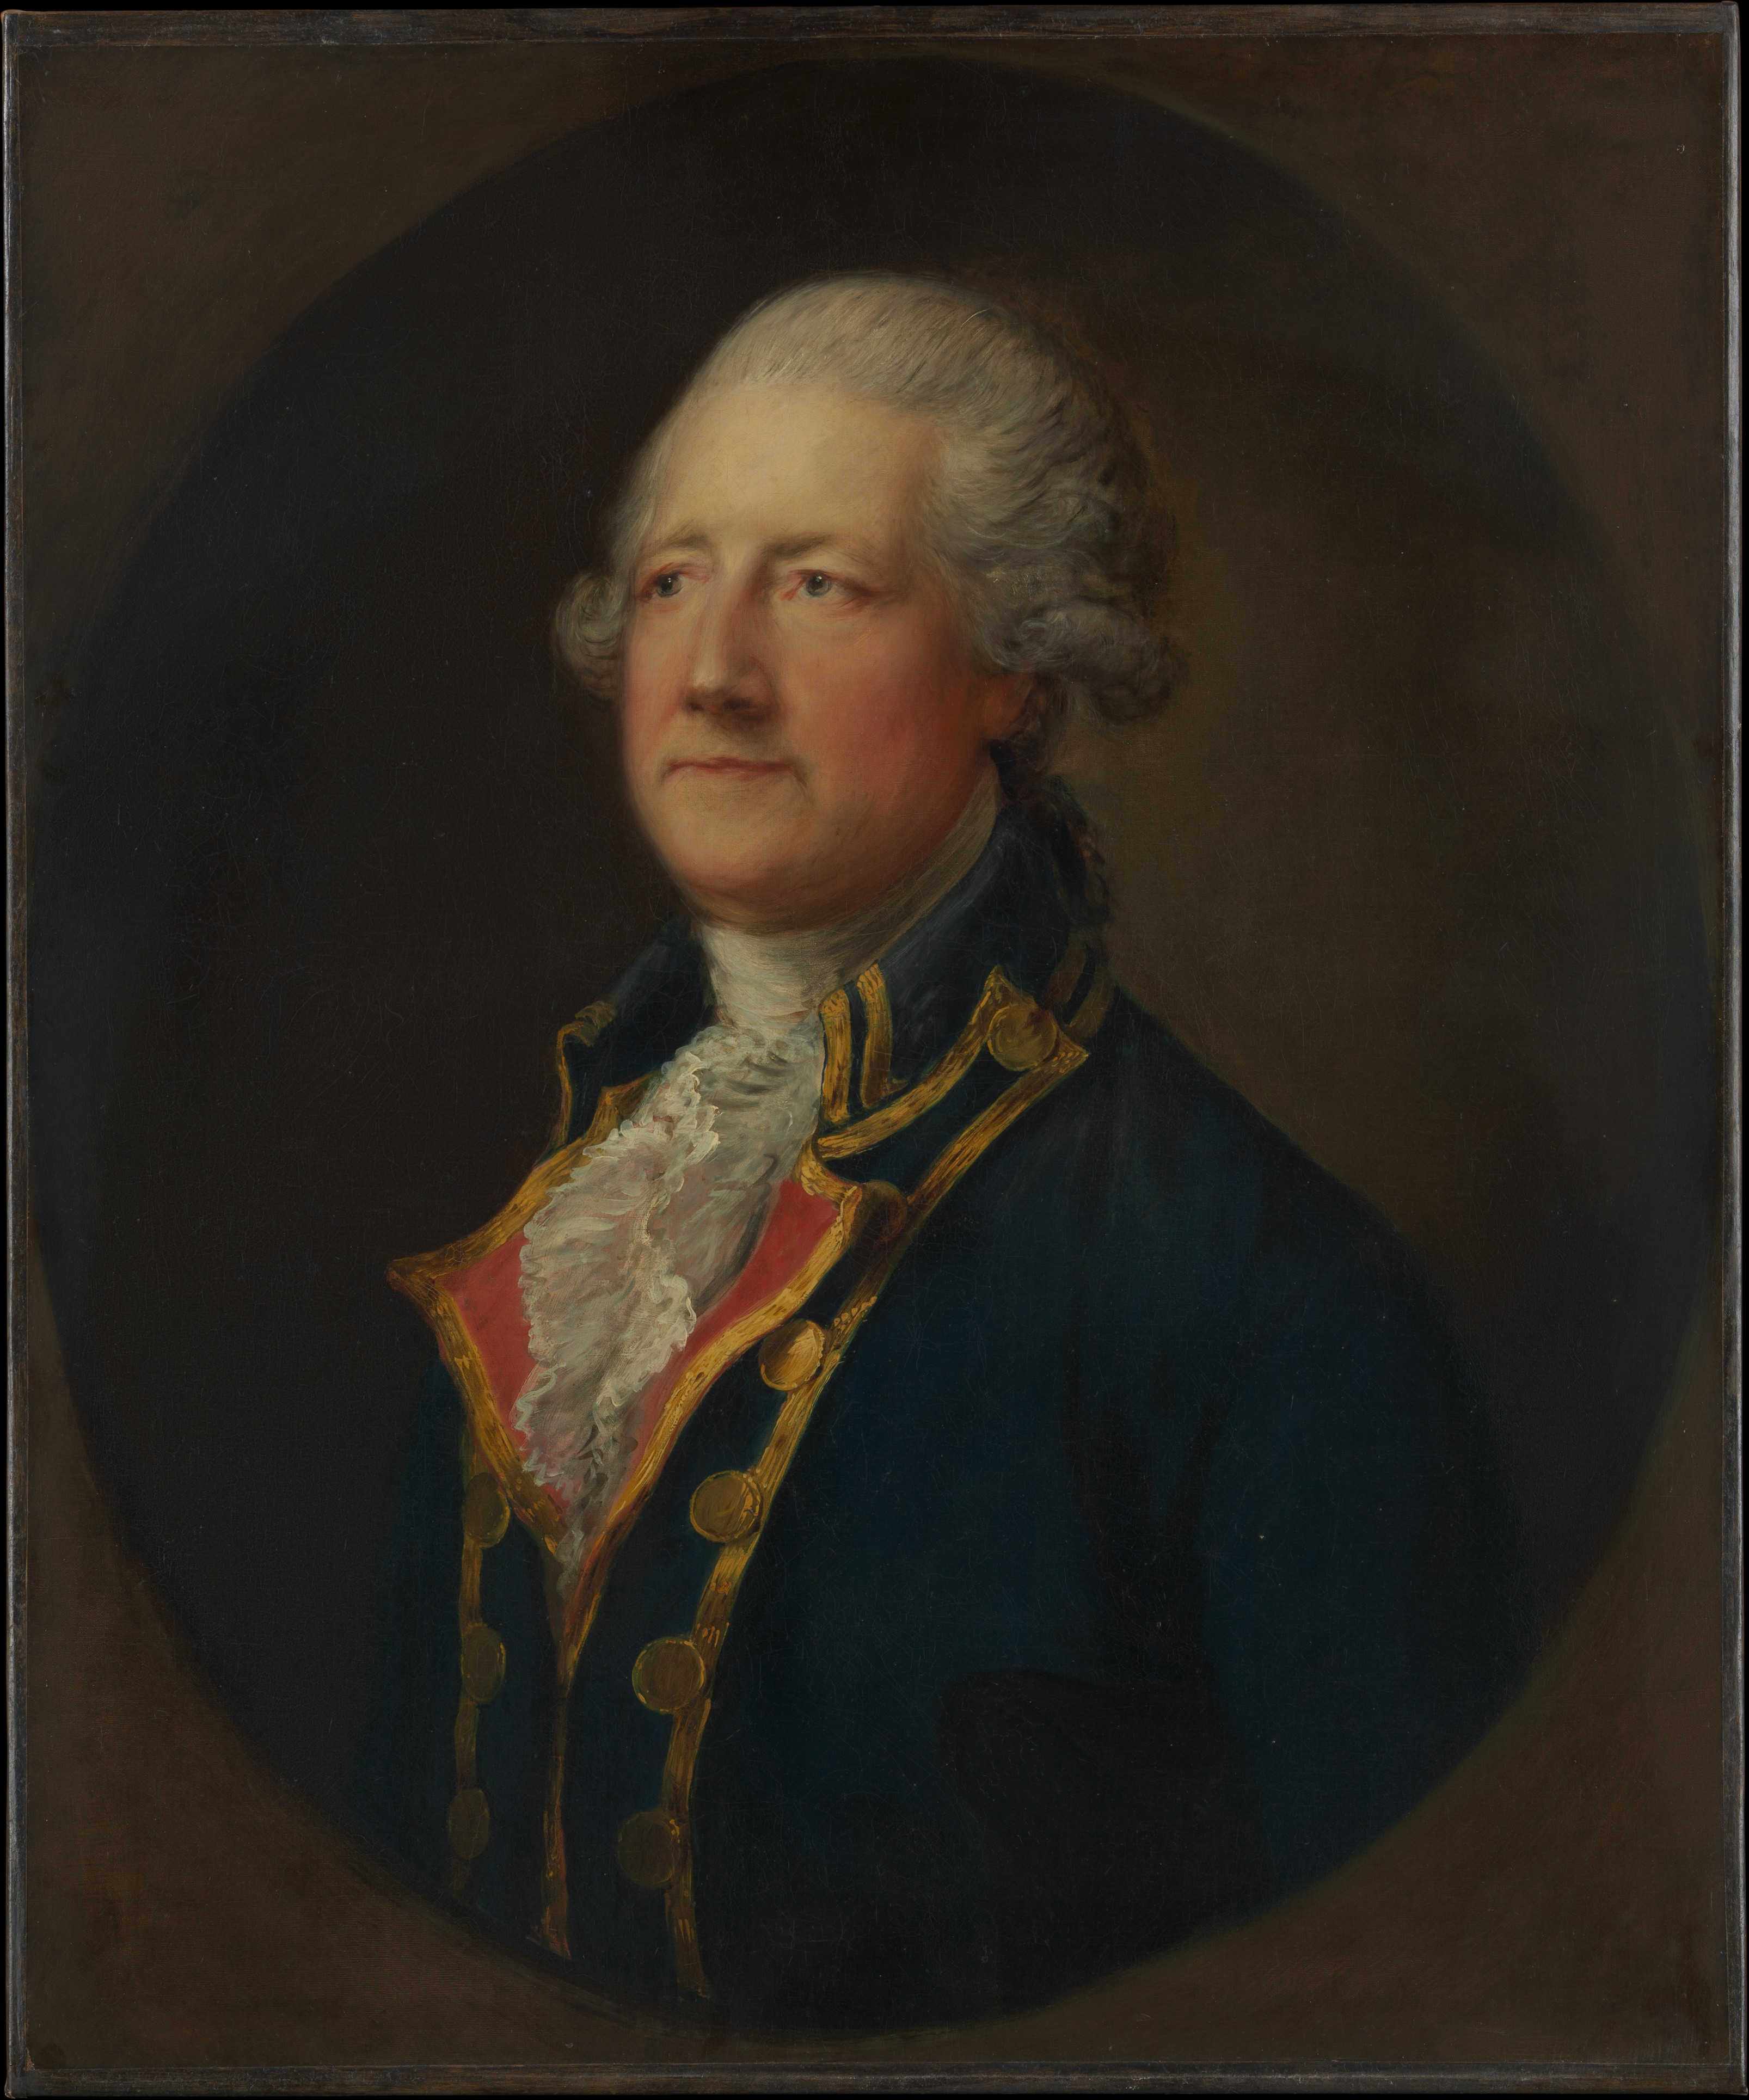 John Hobart by Thomas Gainsborough - 1780s Metropolitan Museum of Art